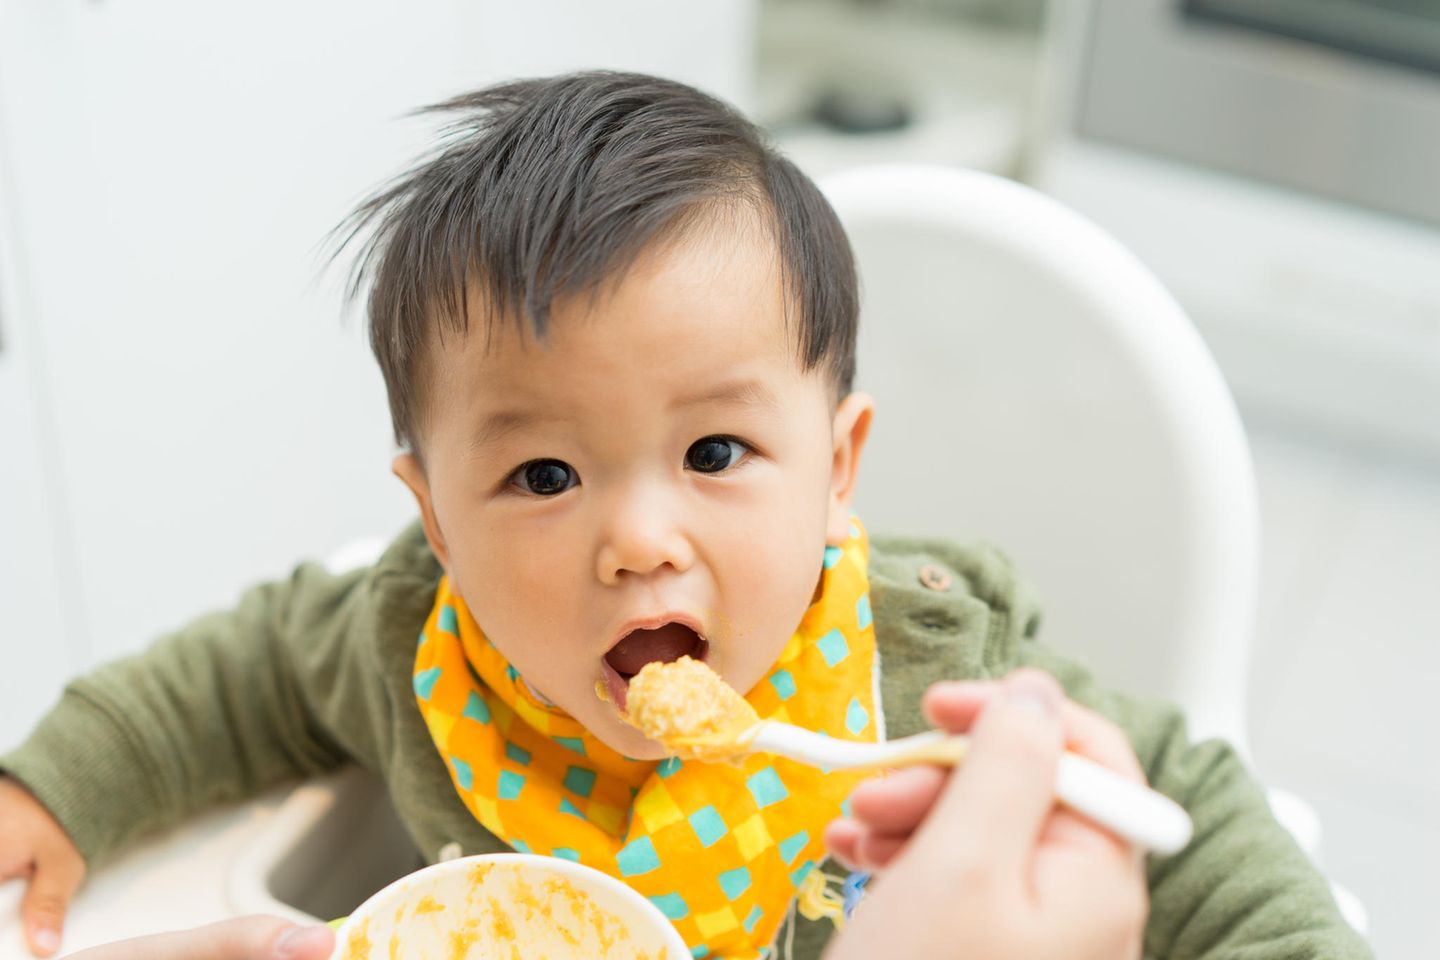 Ein kleiner Junge isst seinen Brei in einem Kinderstuhl